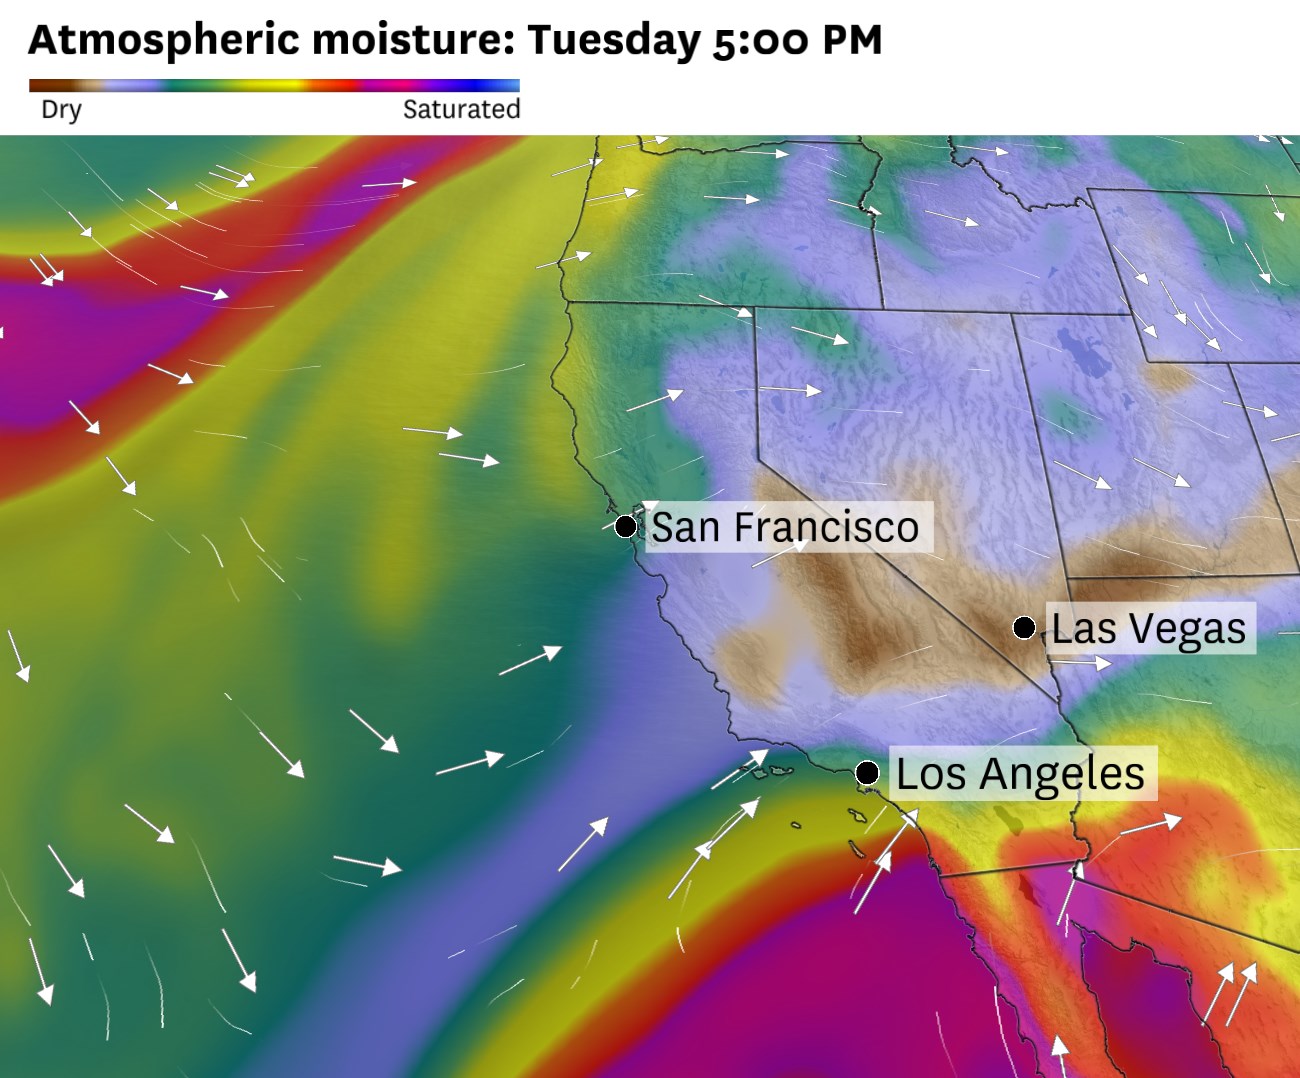 雾霾天气回归加利福尼亚。以下是这些沿海城市可能达到的寒冷程度。